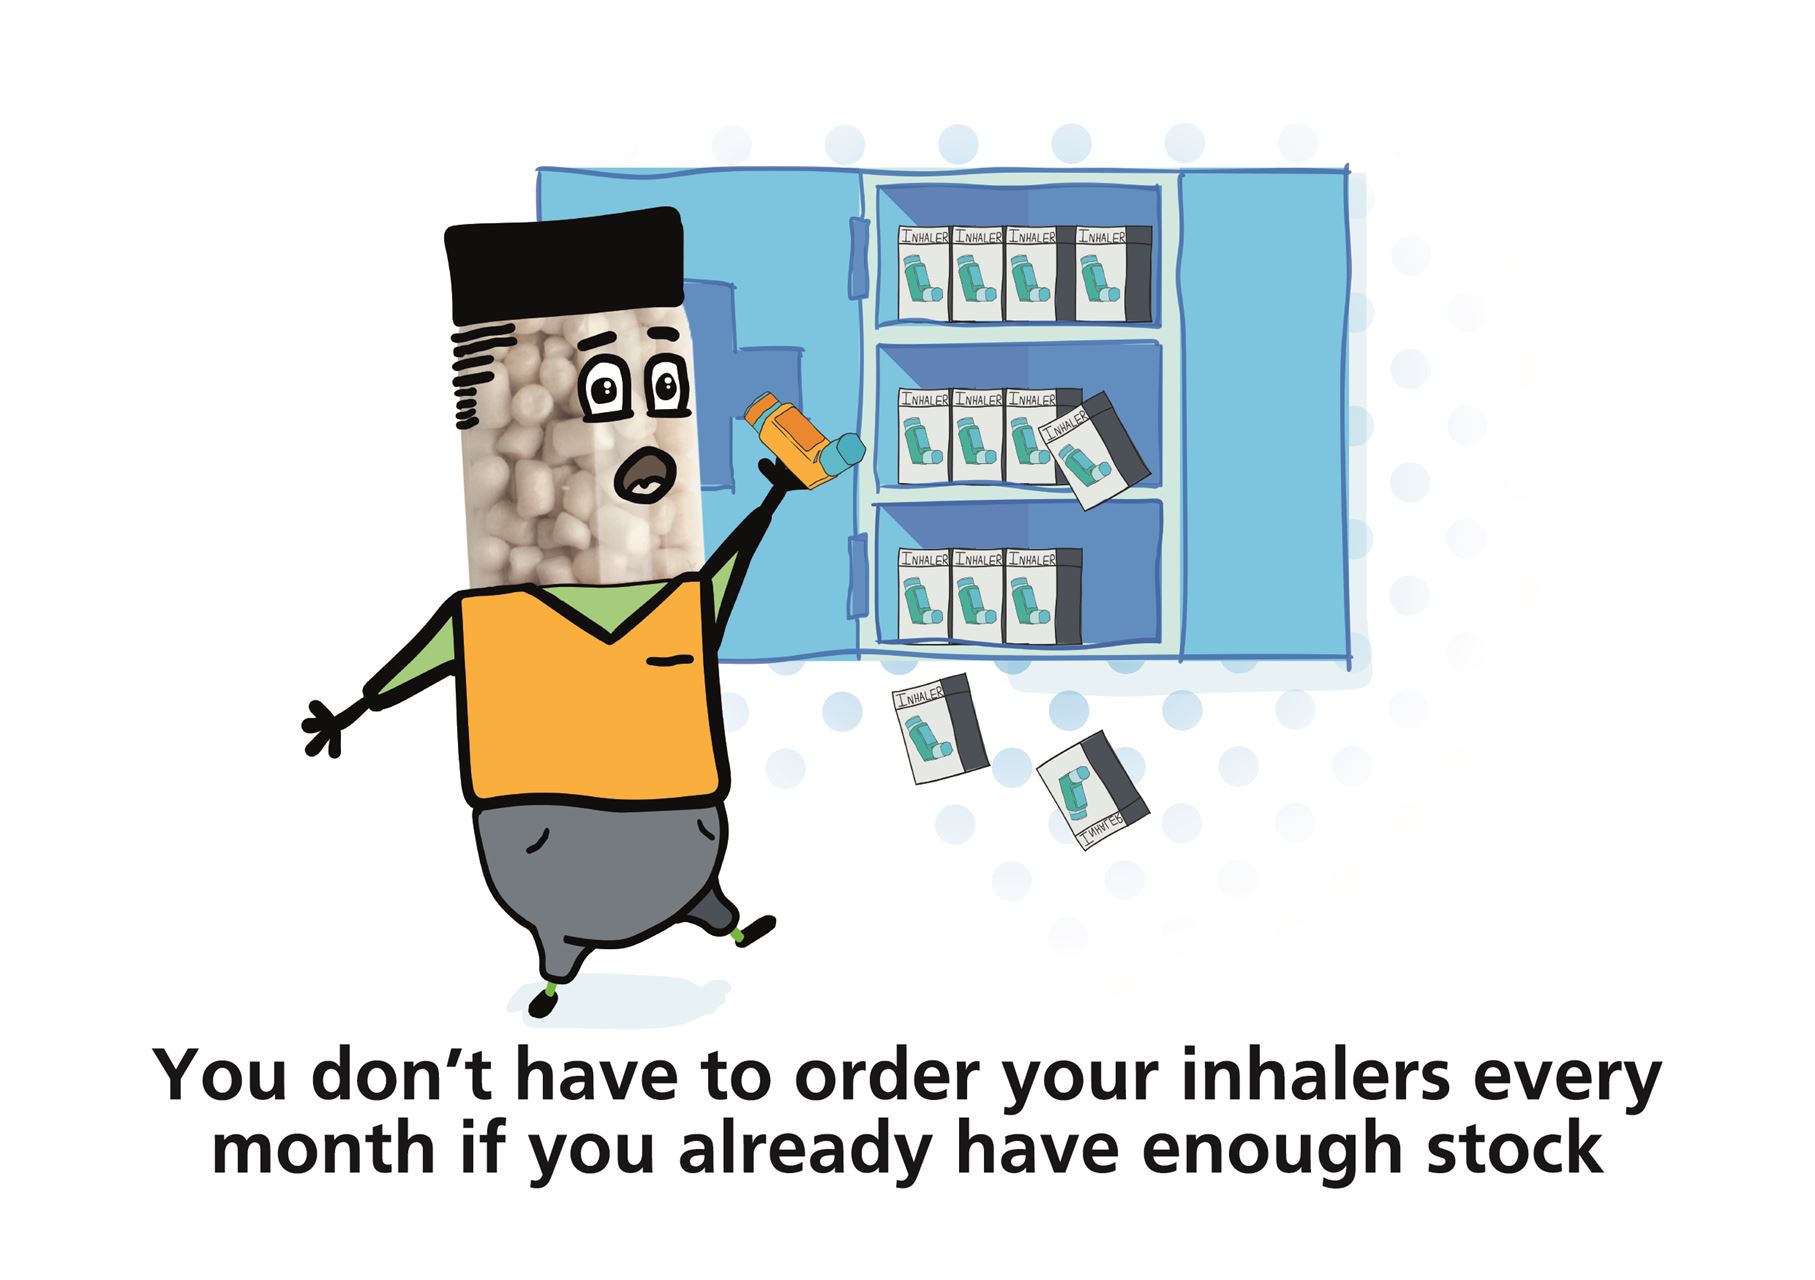 Inhaler Waste Campaign